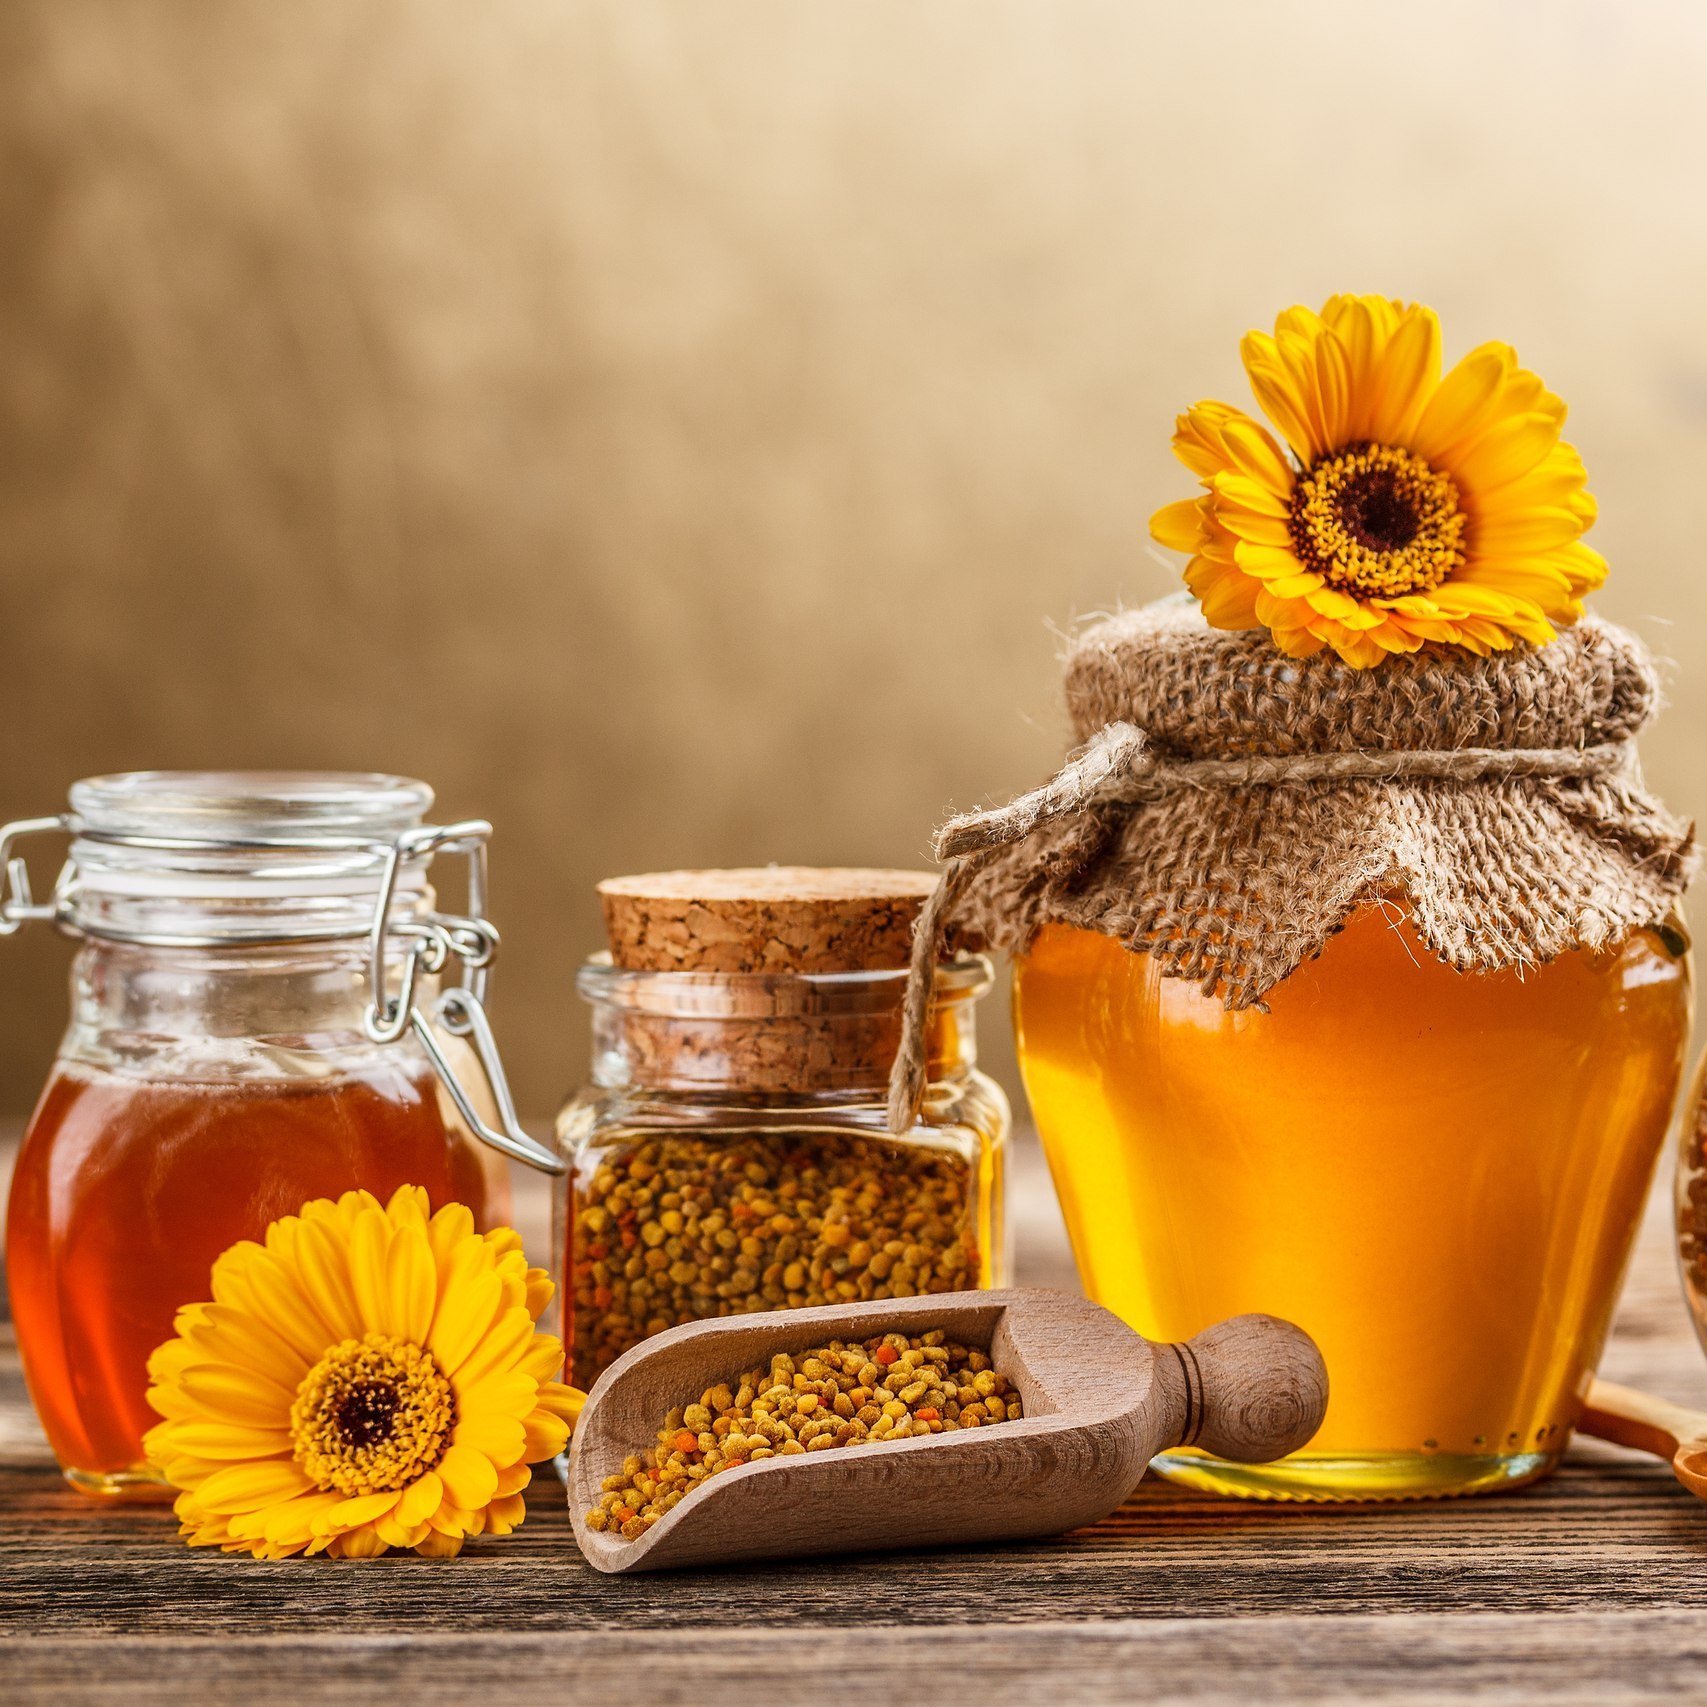 13 14 августа. Медовый спас. Мёд цветочный. С медовым Спасом поздравления. Продукты пчеловодства в медицине.